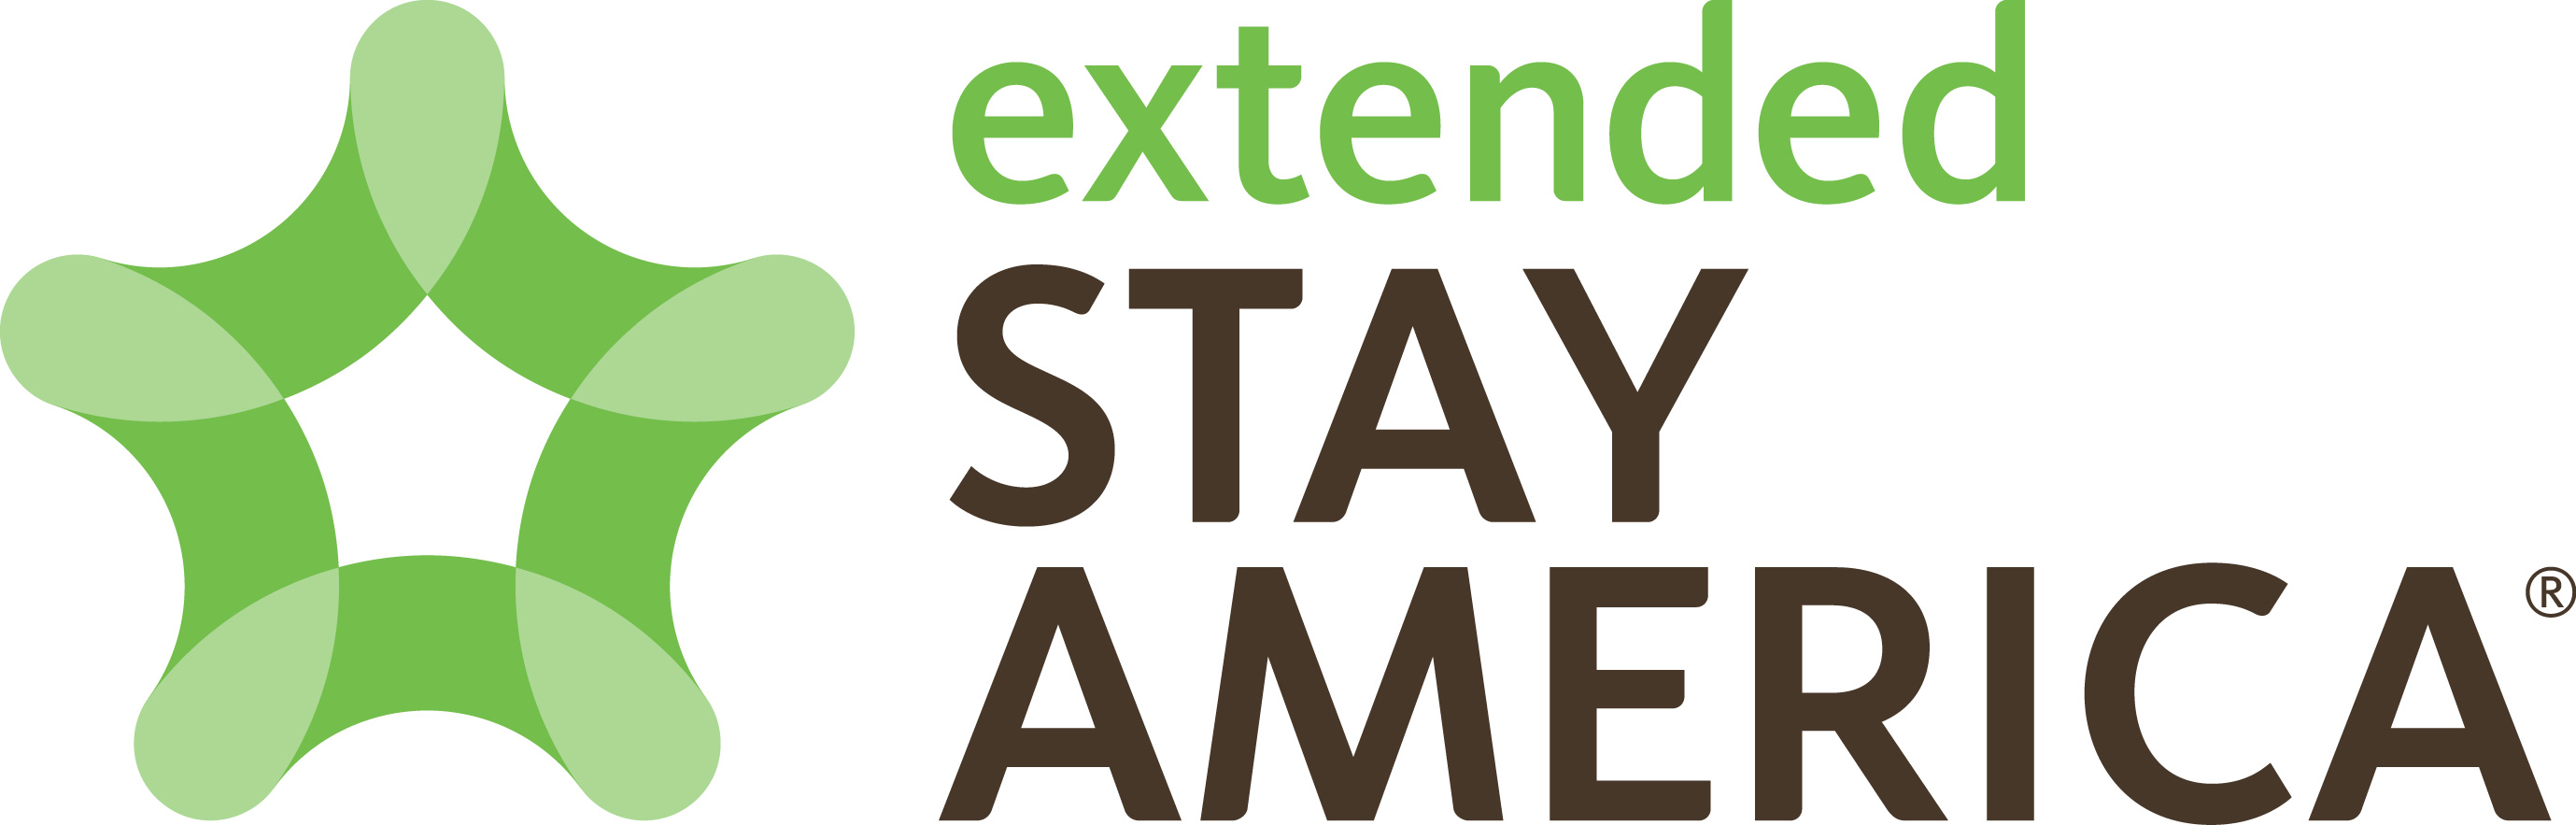 Extended Stay America обявява 20% ръст на франчайз портфолиото си